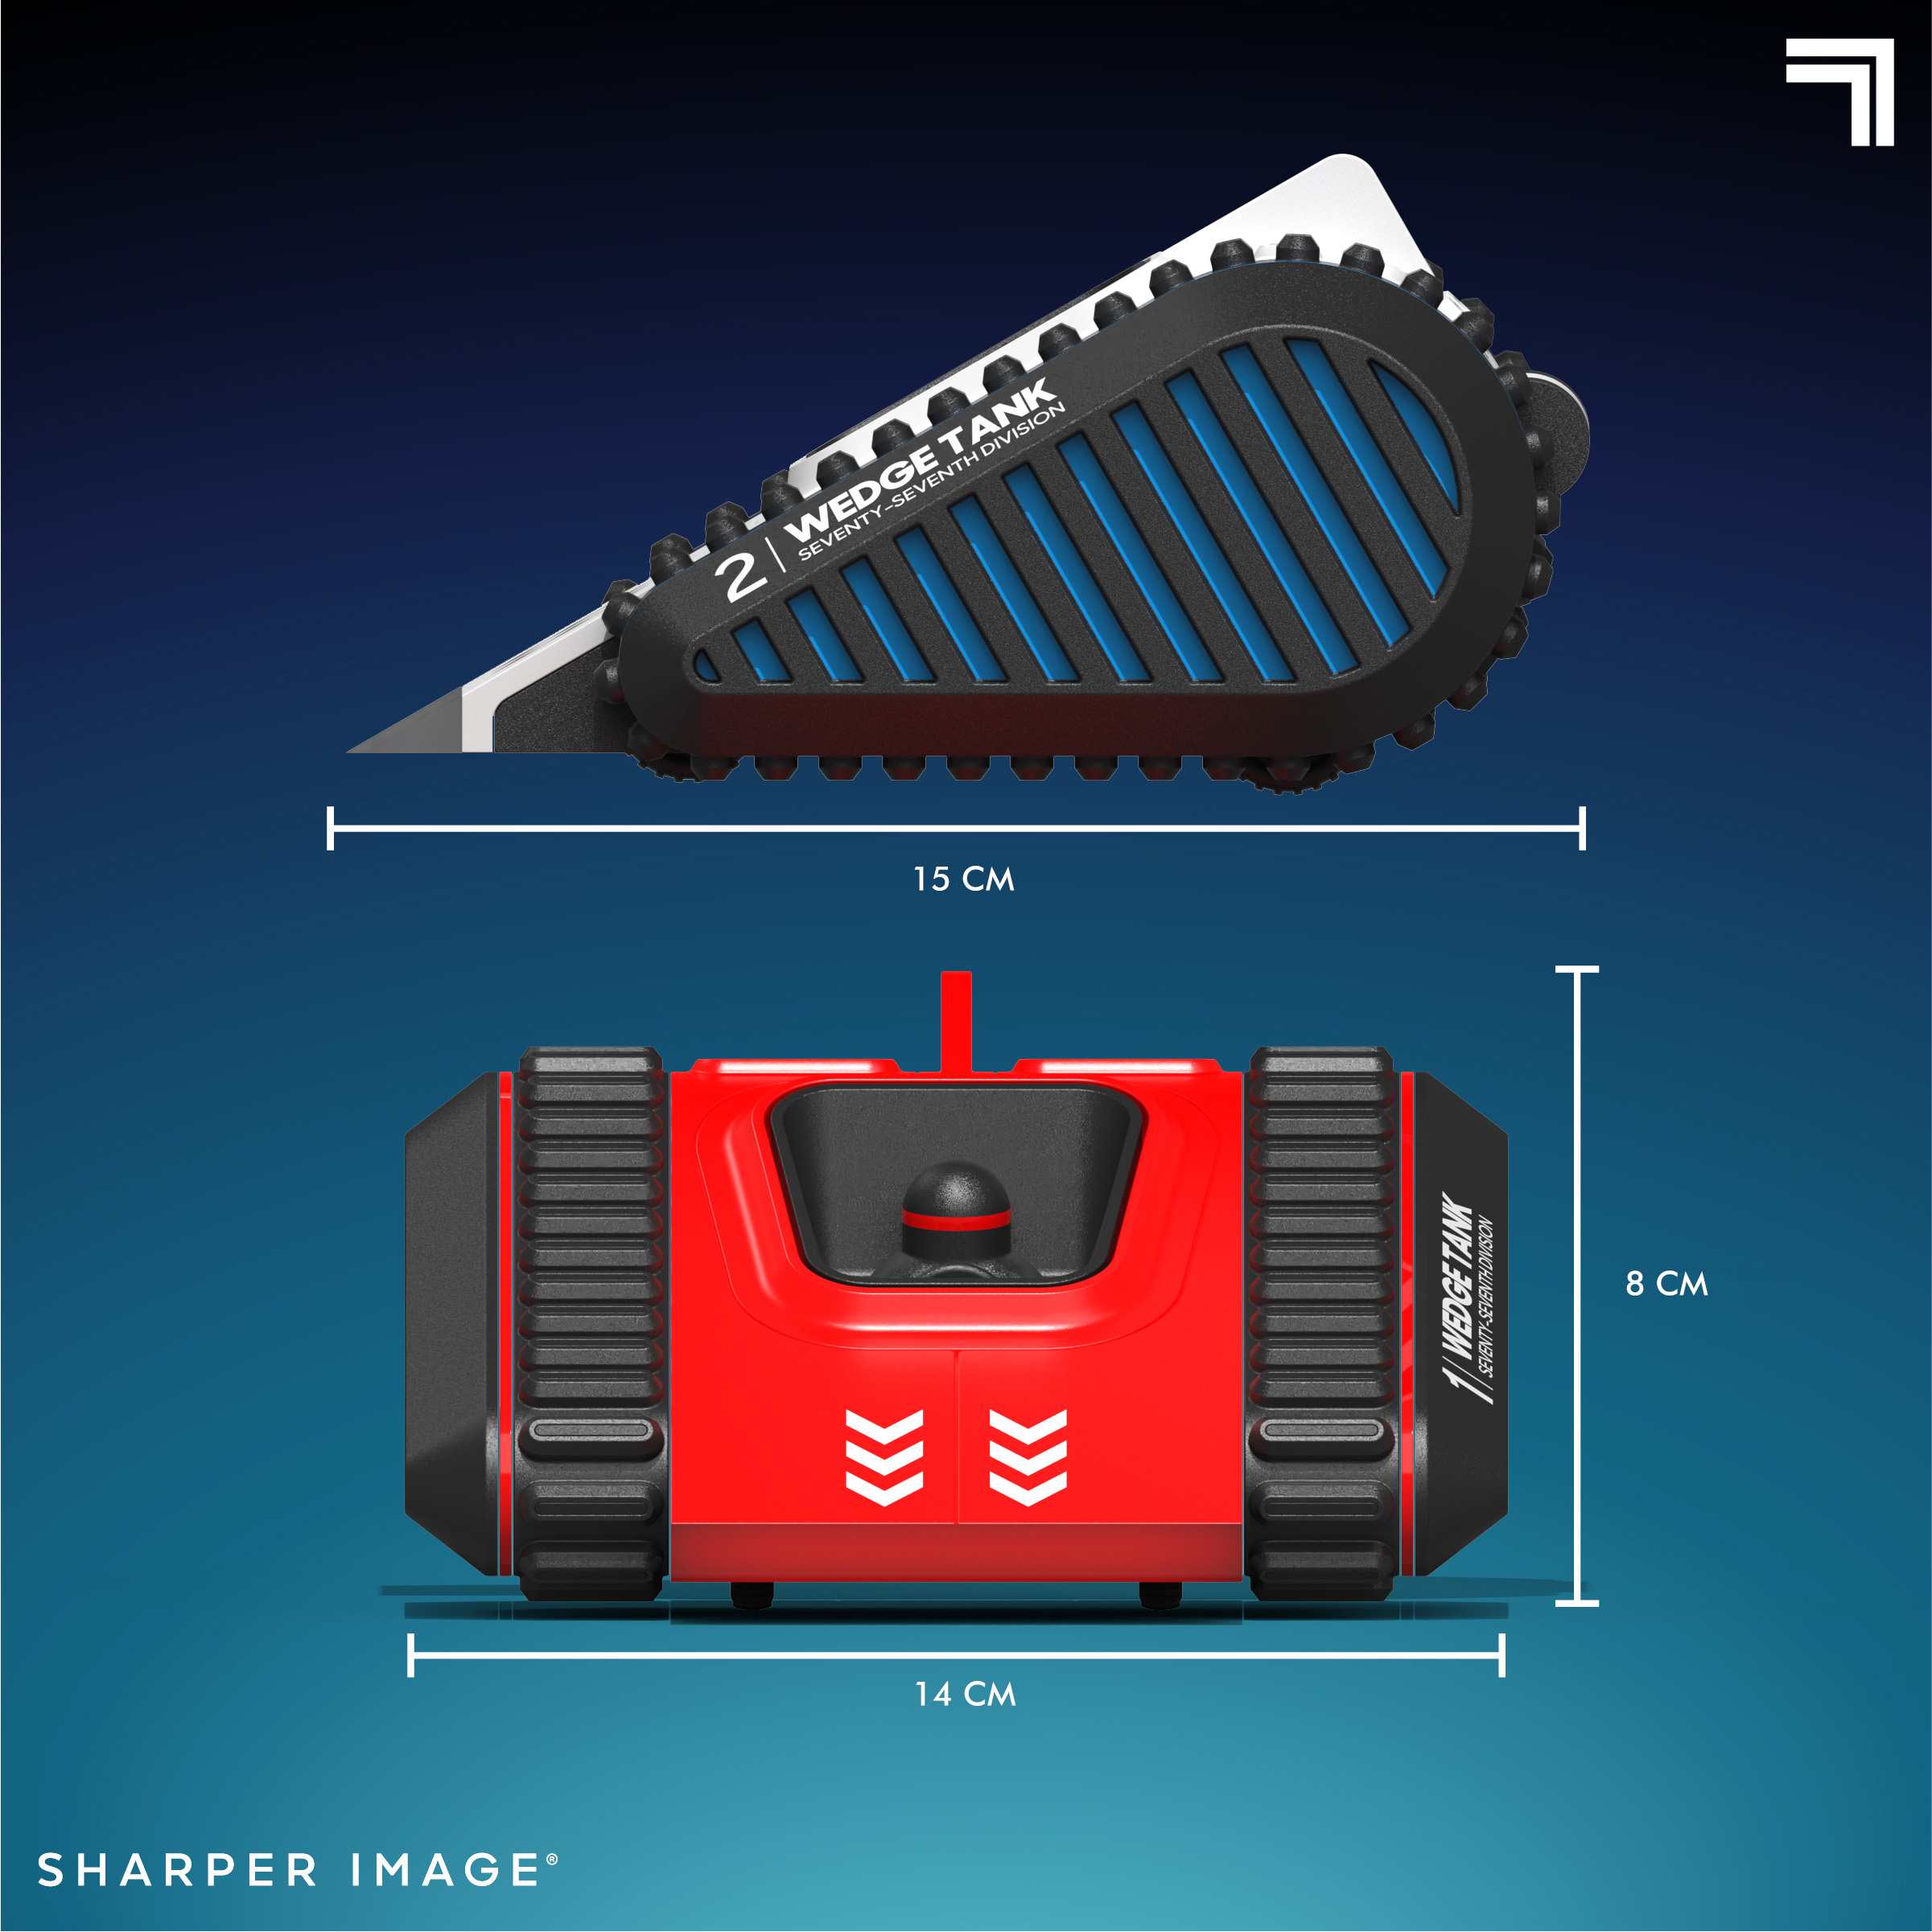 Sharper image - pack con due carri armati radiocomandati battle track - Sharper Image